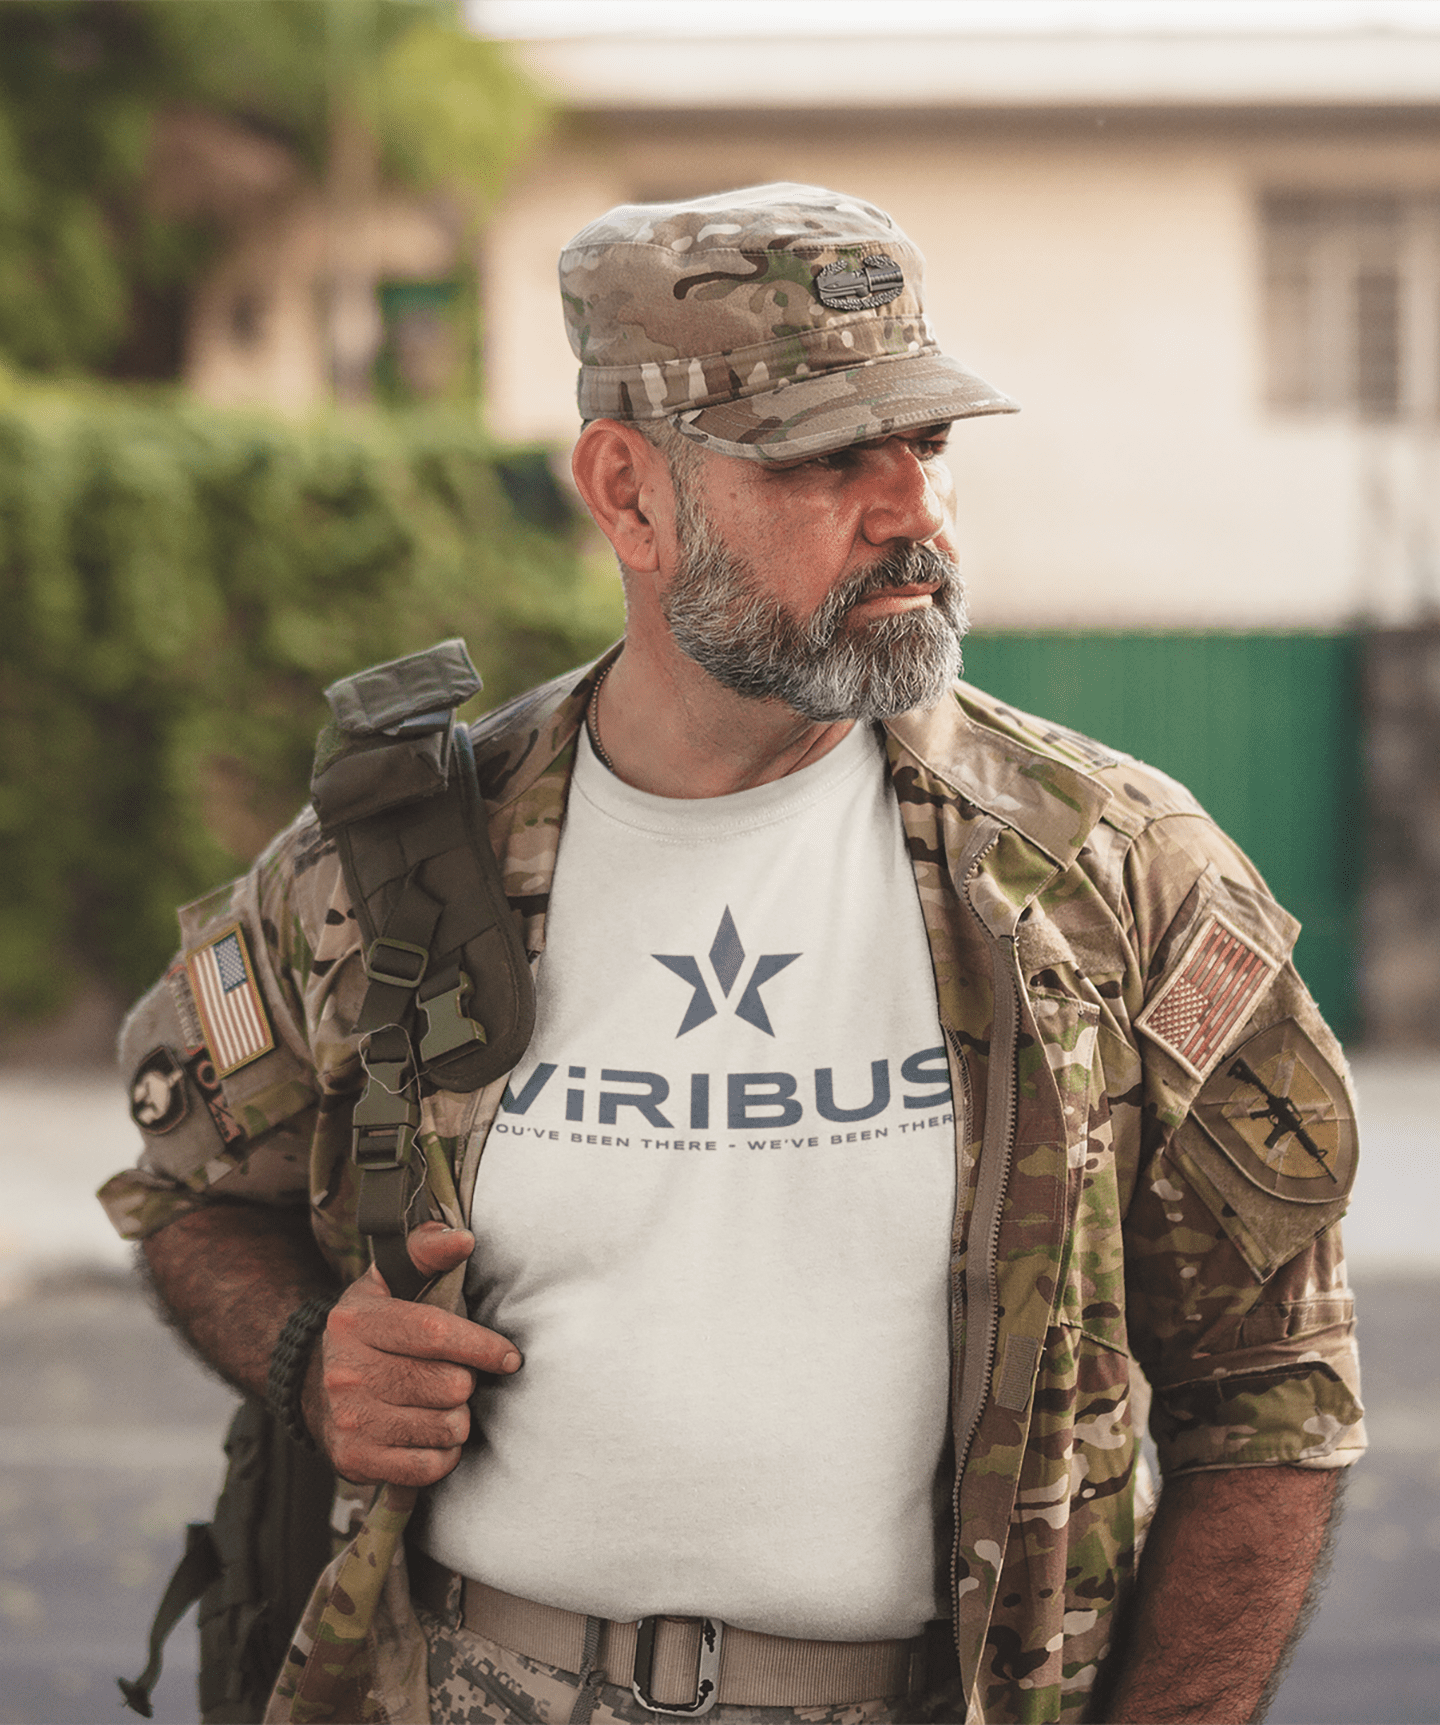 soldier wearing viribus shirt